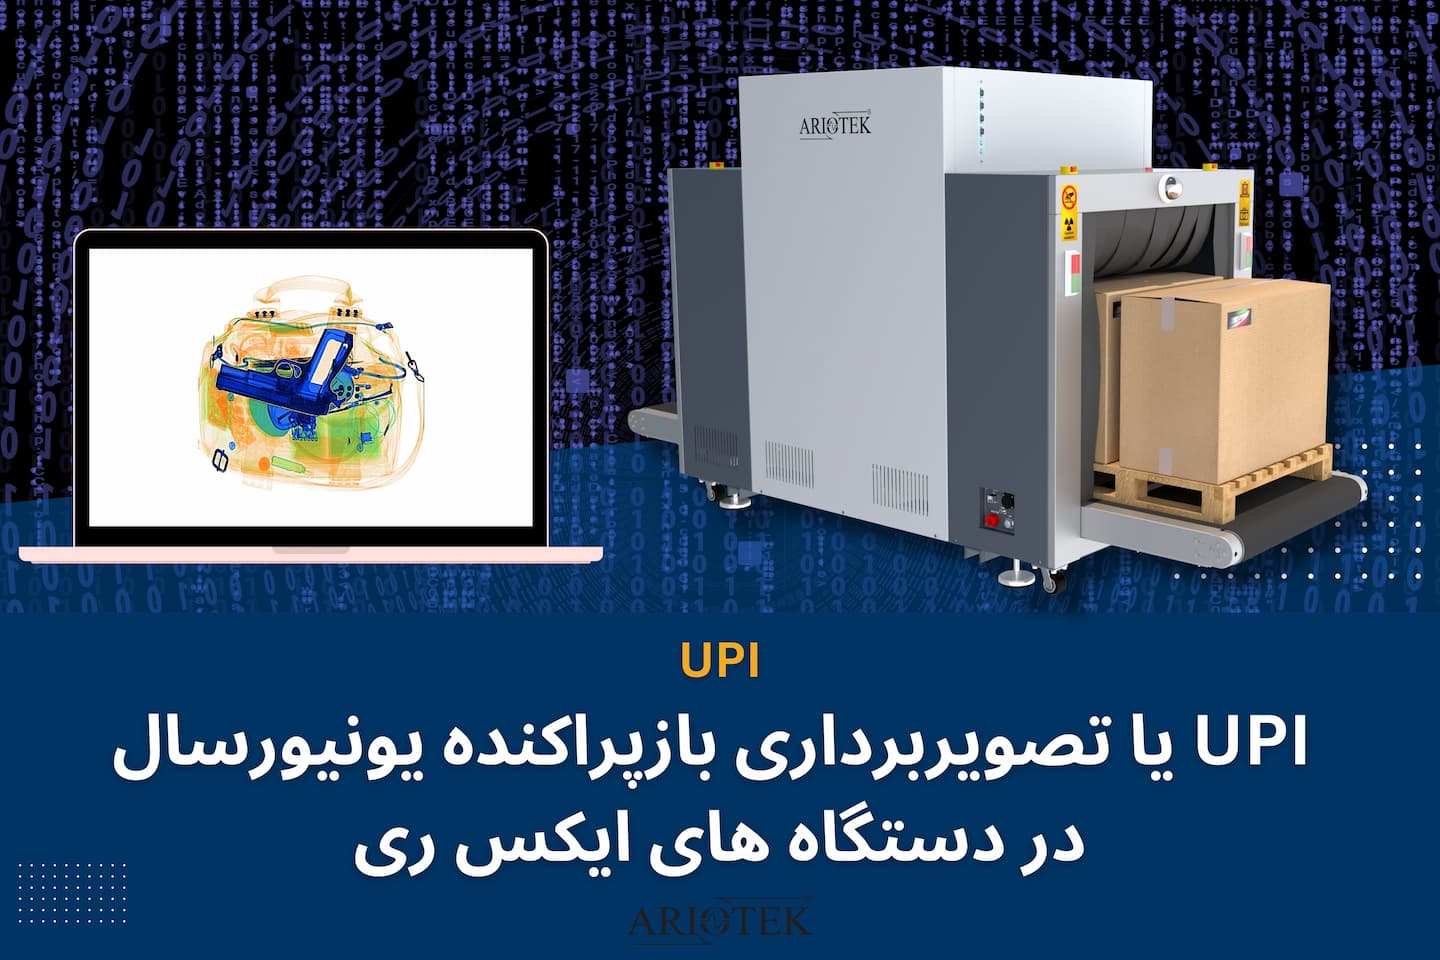 تکنولوژی UPI در دستگاه های ایکس ری بازرسی یا تصویربرداری بازپراکنده یونیورسال